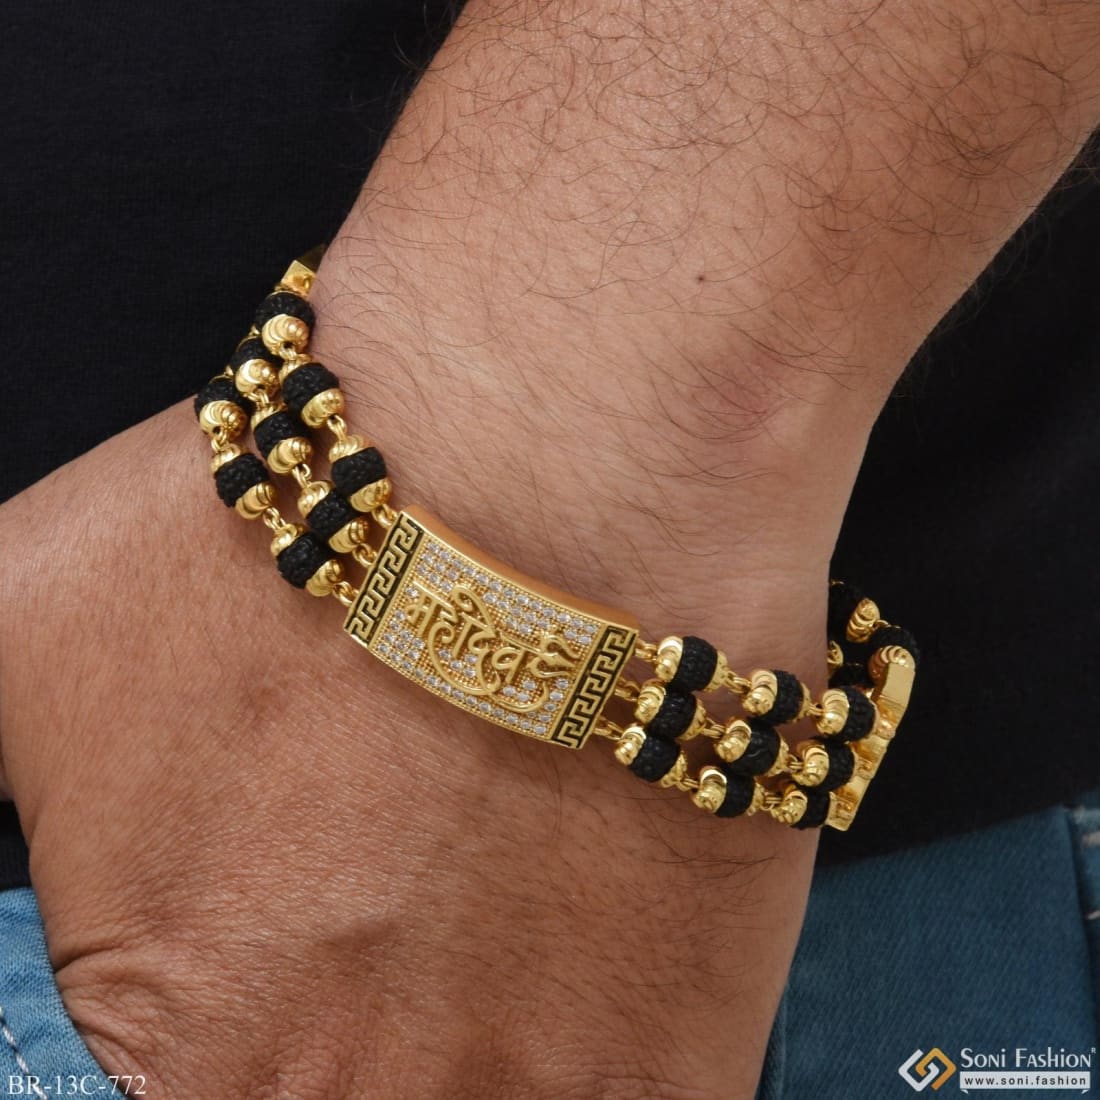 Pin by Mohini Wasdev on Jewellery | Jewelry bracelets gold, Mens gold  bracelets, Man gold bracelet design